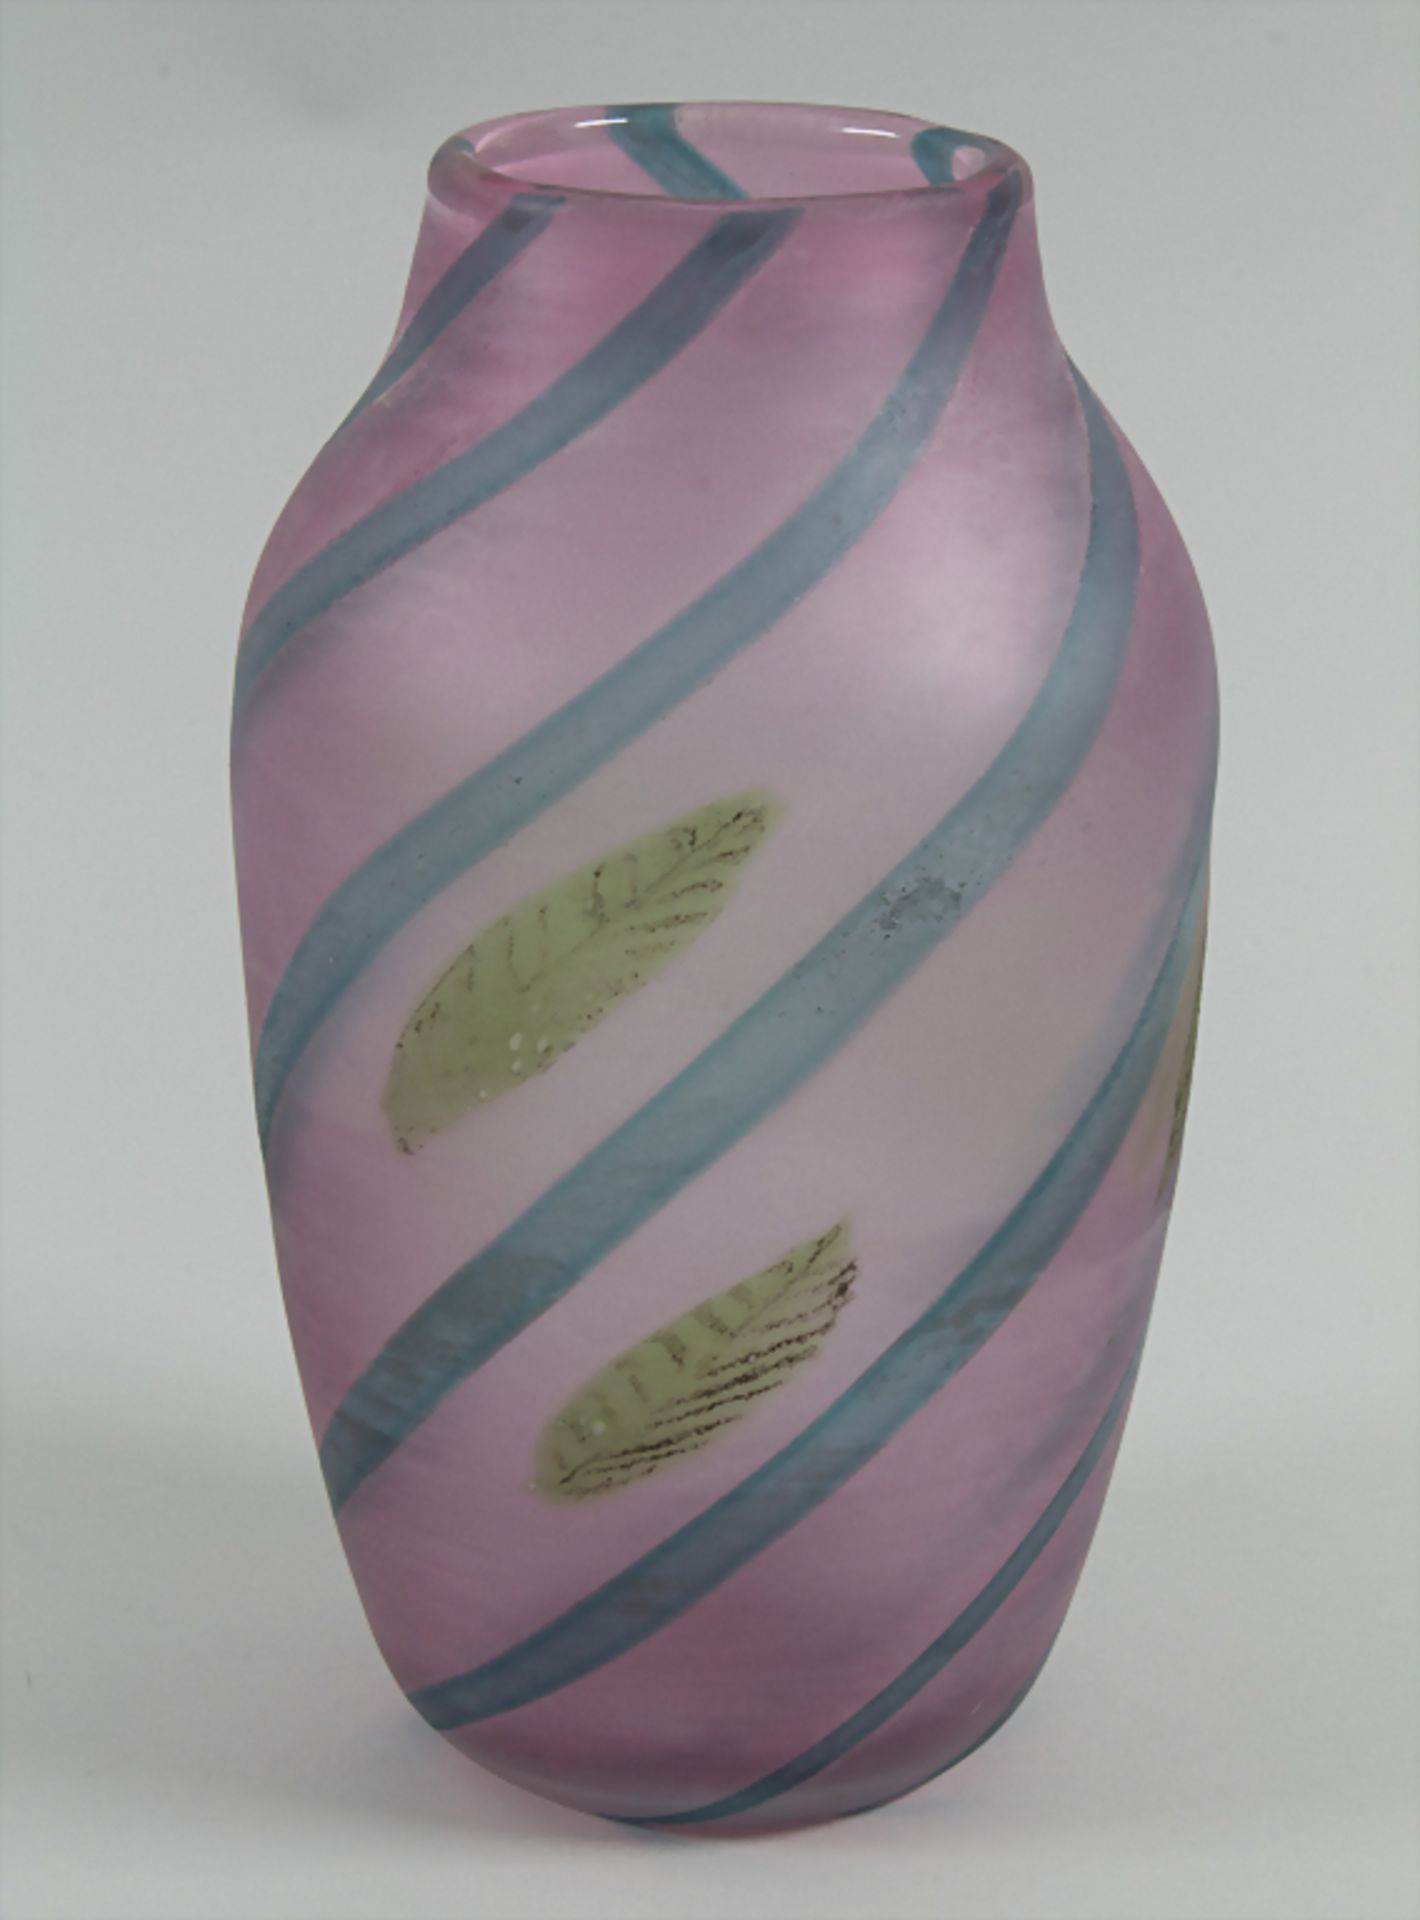 Glasziervase / A decorative vase, Cenedese, Murano, 80/90er Jahre